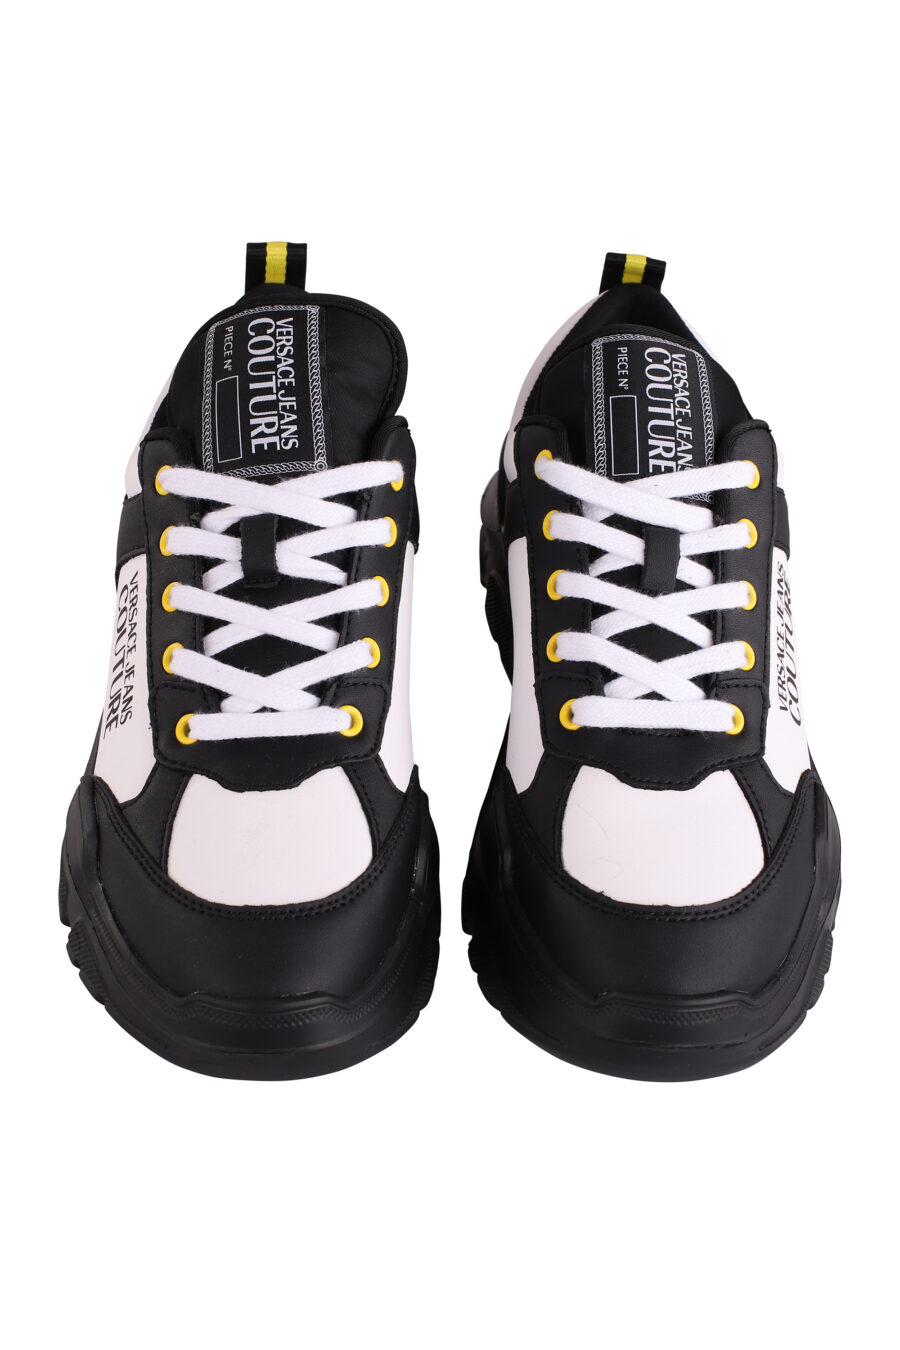 Baskets bicolores noires et blanches avec logo et détails jaunes - IMG 9115